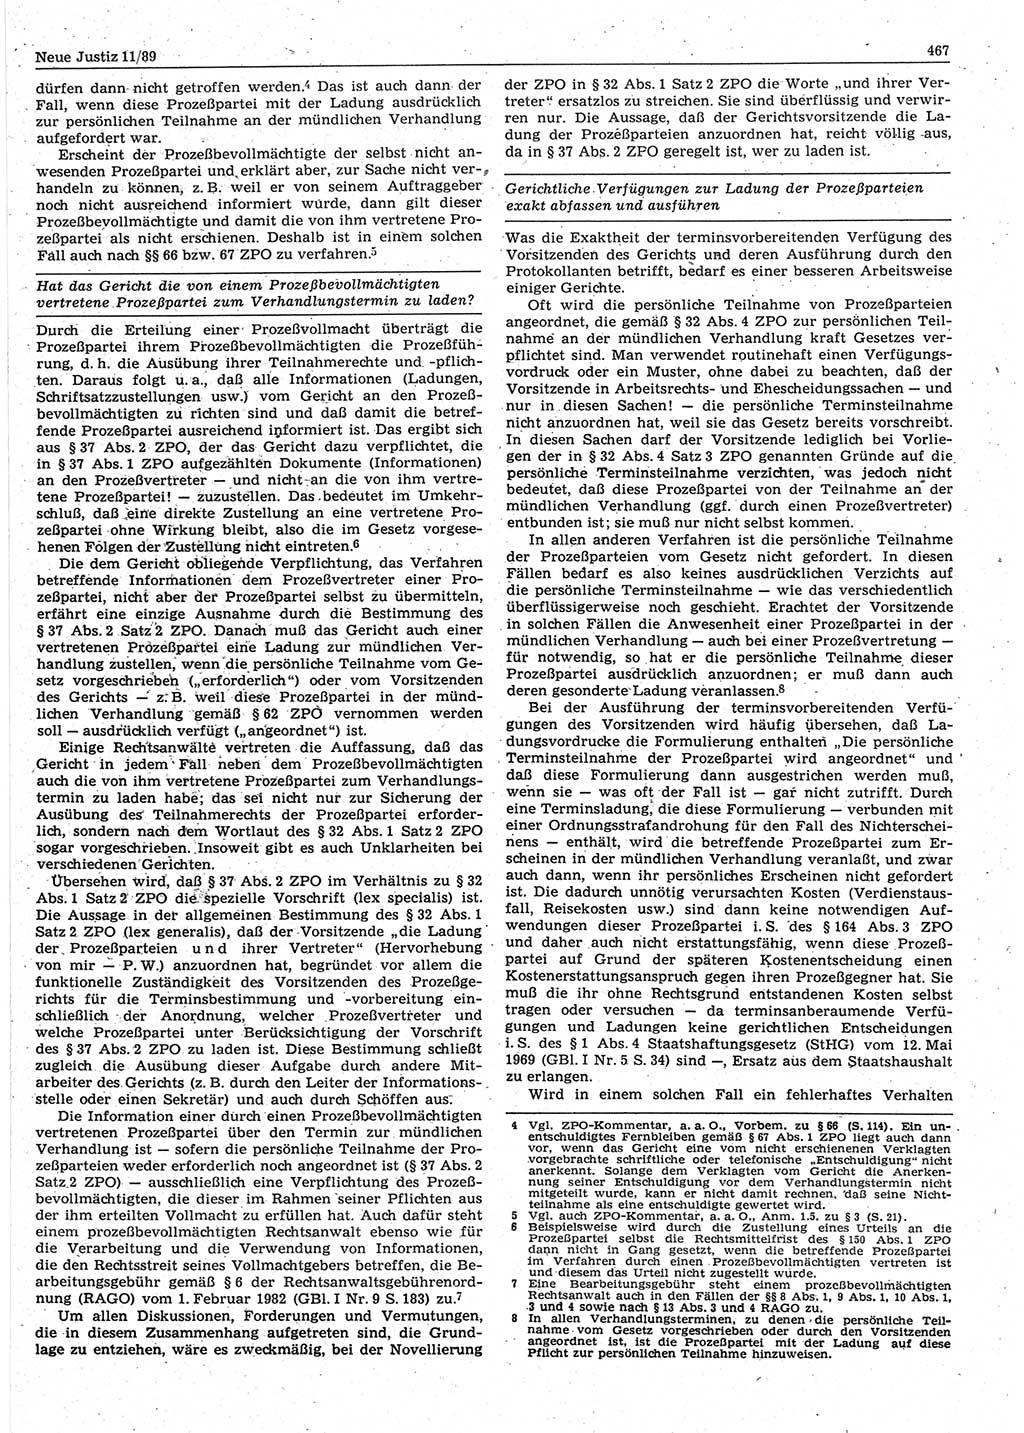 Neue Justiz (NJ), Zeitschrift für sozialistisches Recht und Gesetzlichkeit [Deutsche Demokratische Republik (DDR)], 43. Jahrgang 1989, Seite 467 (NJ DDR 1989, S. 467)